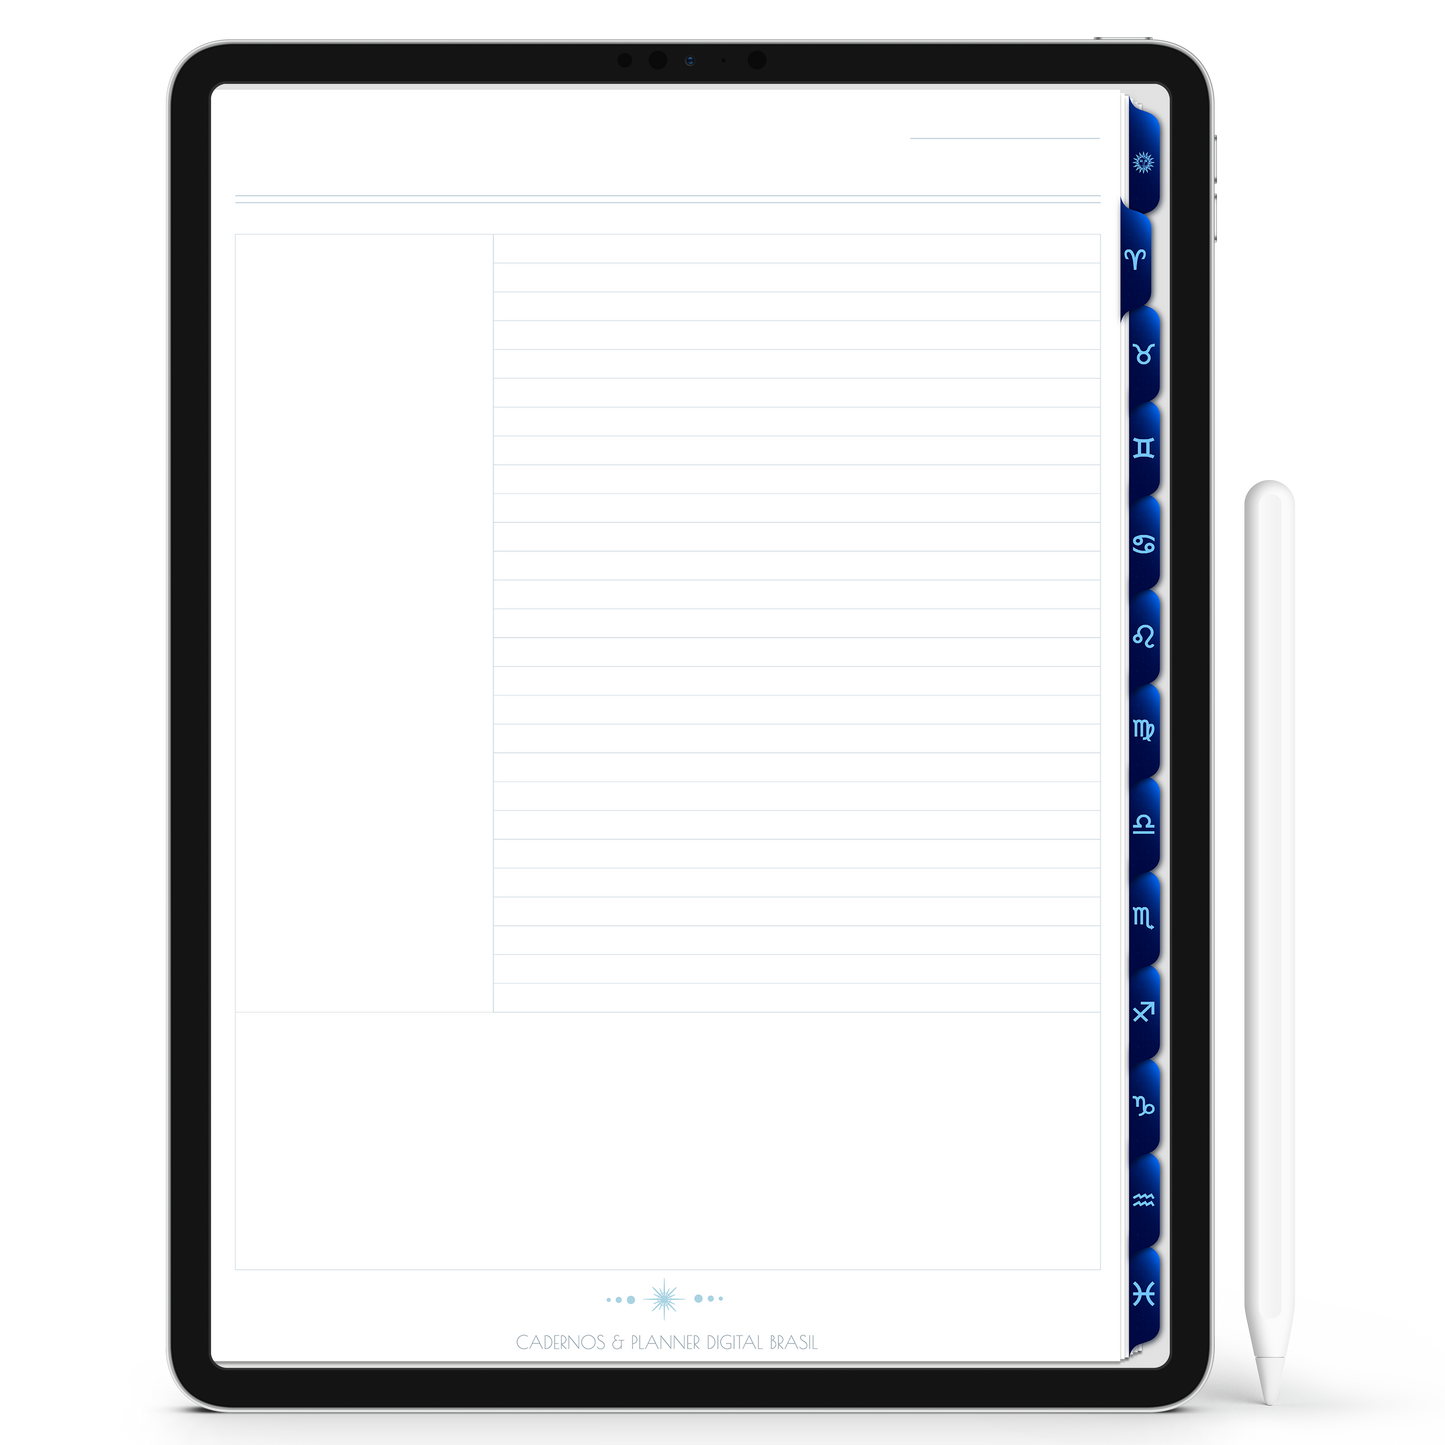 Caderno Digital do Signo de Libra do Zodíaco 12 Matérias Constelações Study iPad iOs Tablet Android GoodNotes Noteshelf Sustentável Cadernos & Planner Digital Brasil